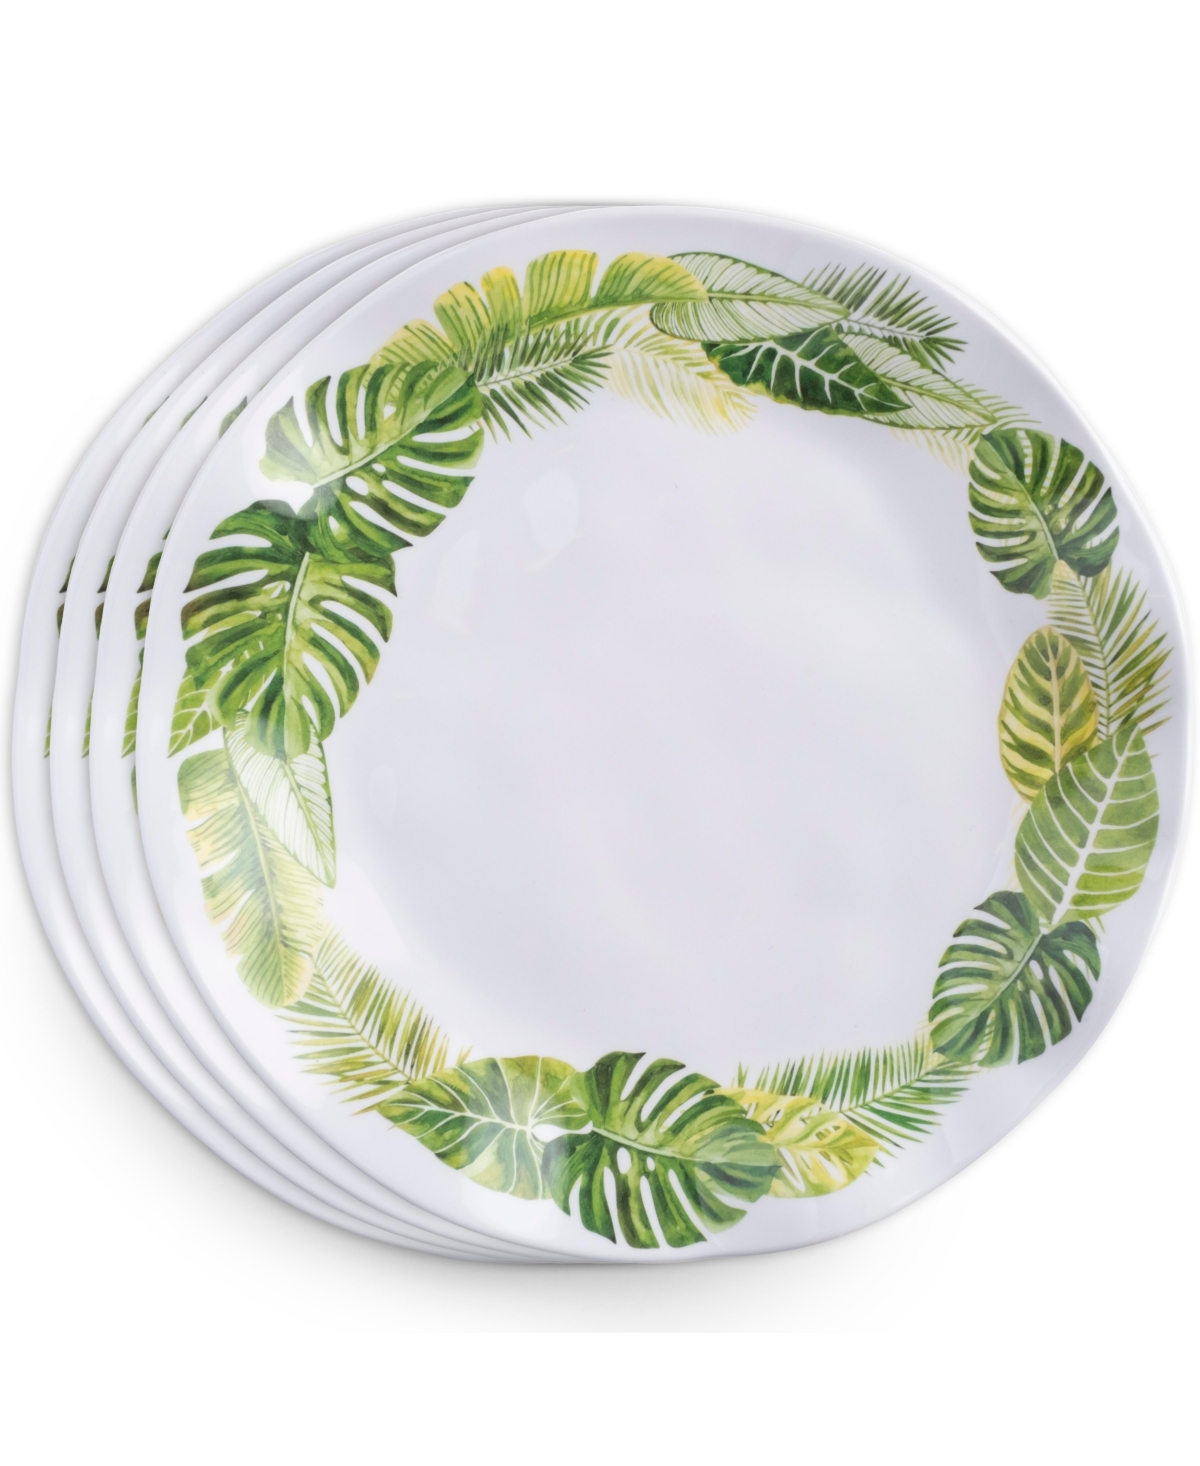 Melamine Palm 10.5" Dinner Plate Set/4 - White, Green